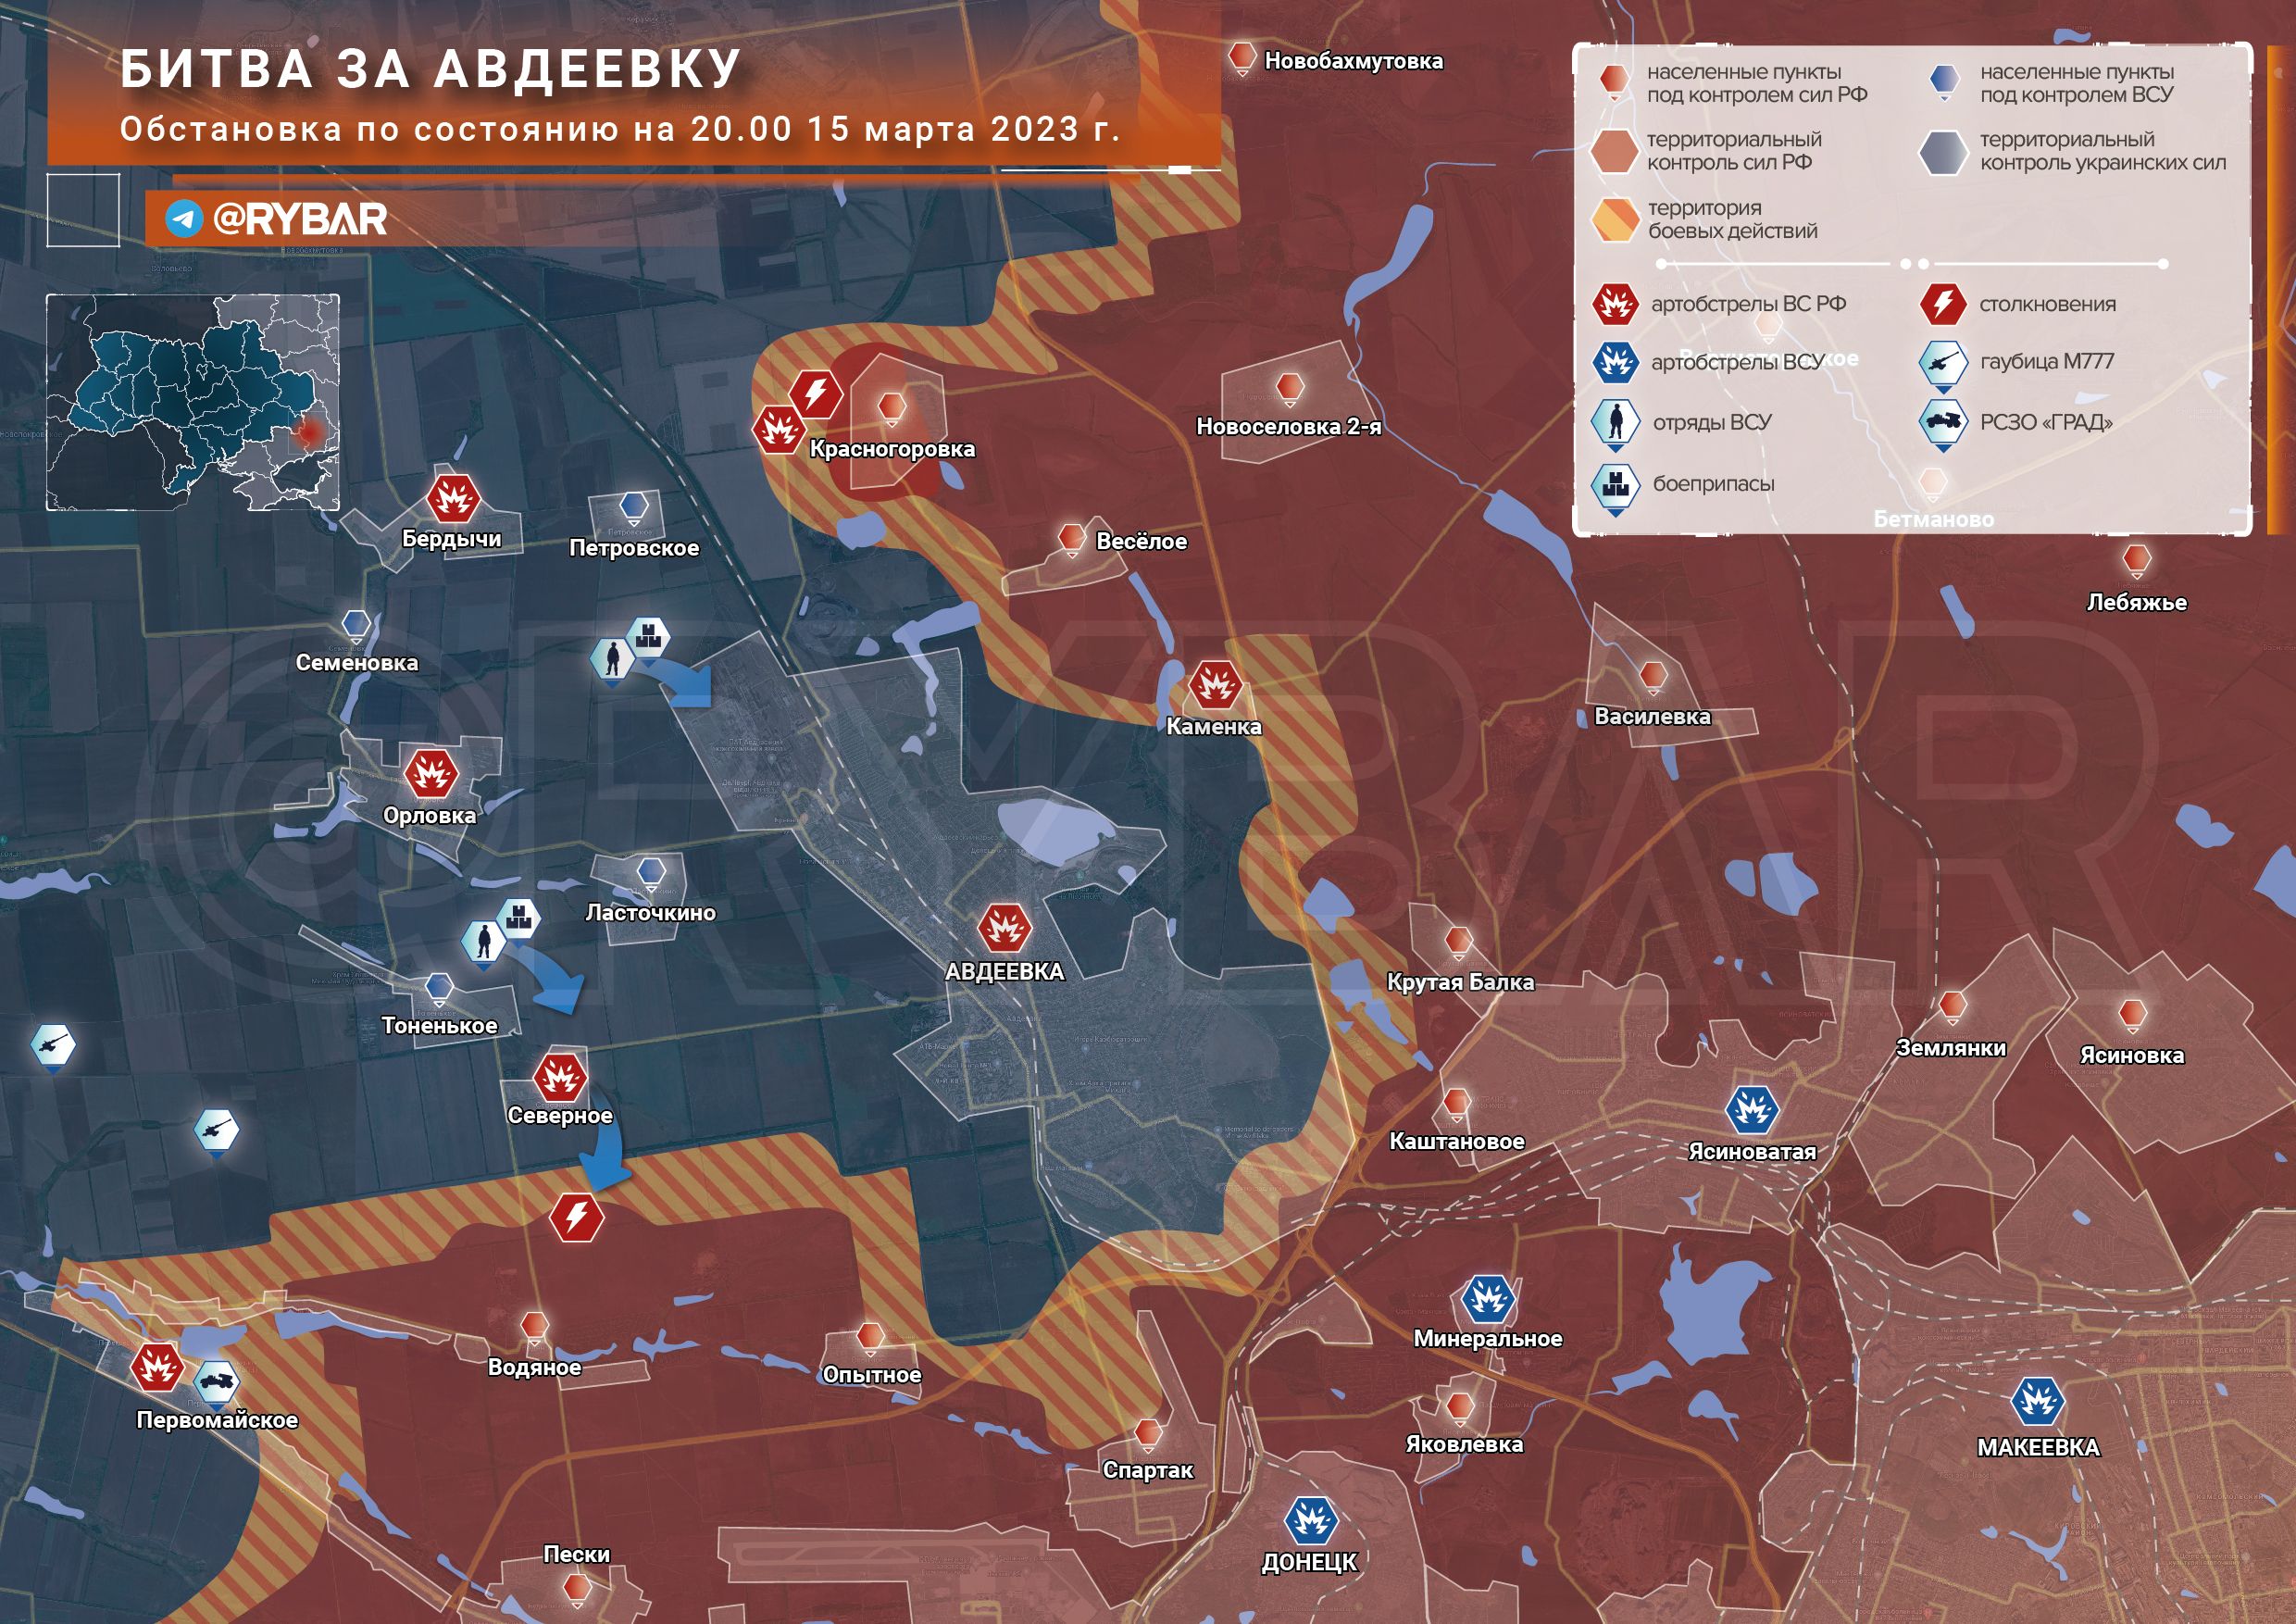 Карта боевых действий, бои за Авдеевку, к утру 16 марта 2023г.